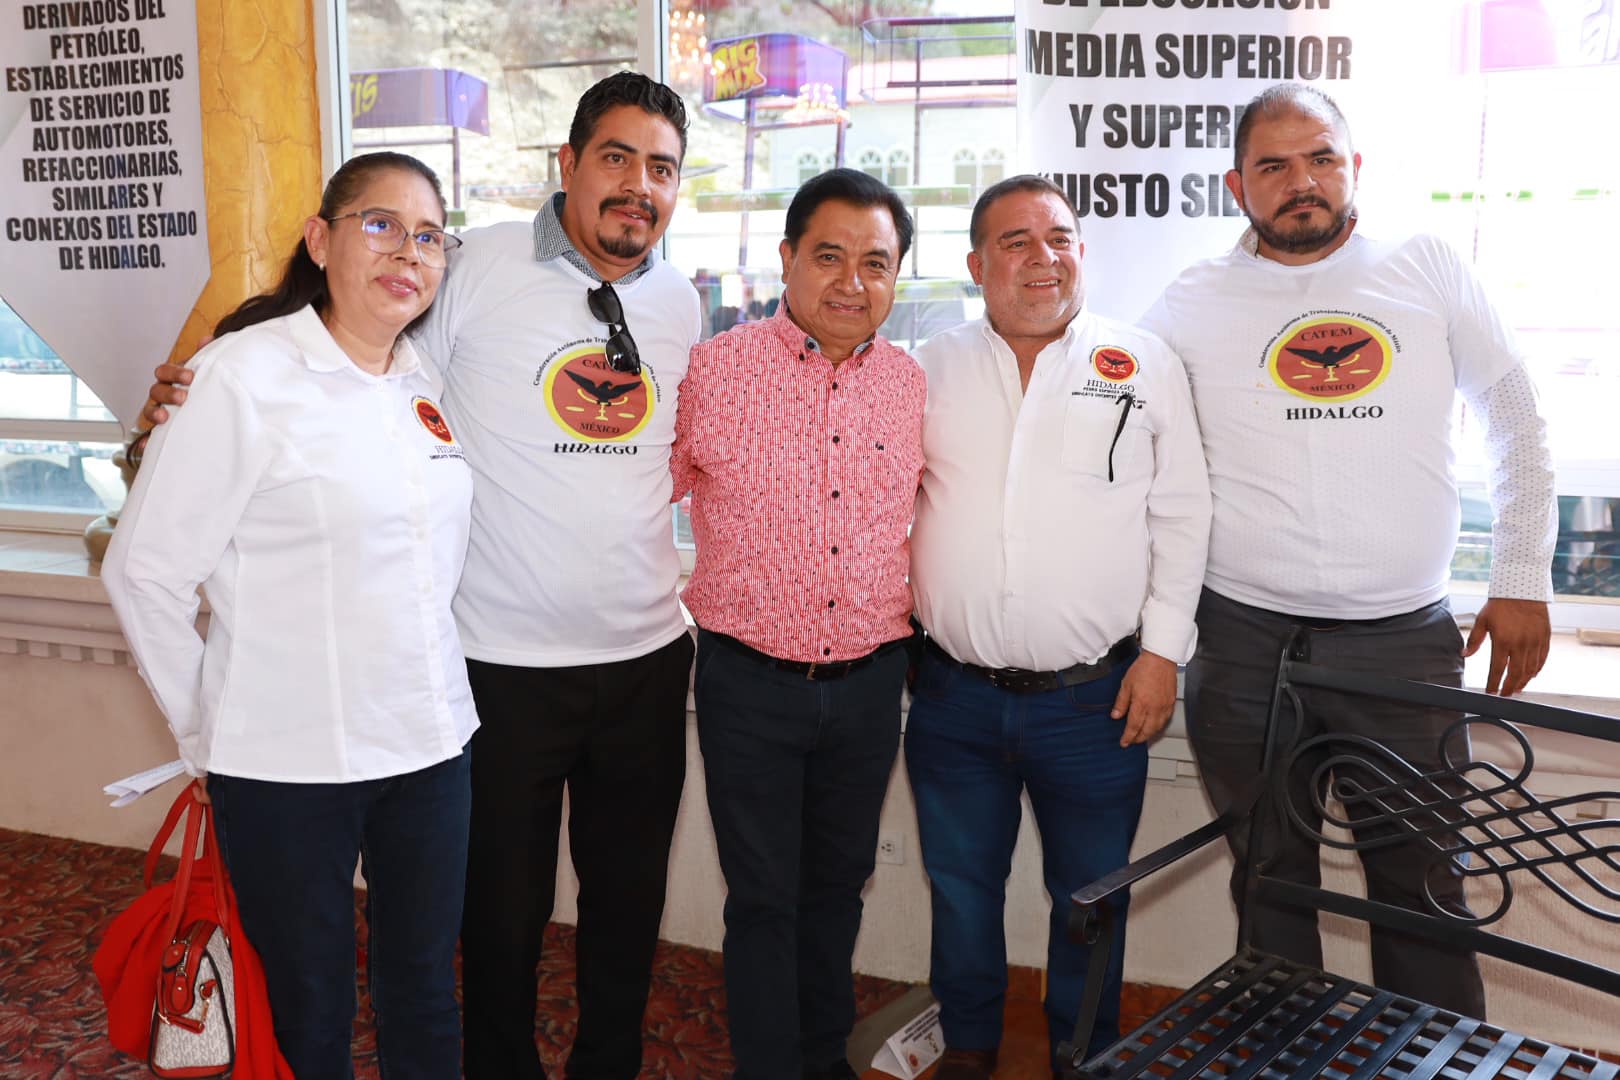 Andrés Velázquez promete apoyar el programa “Pachuca, Capital de la Transformación” desde el Congreso